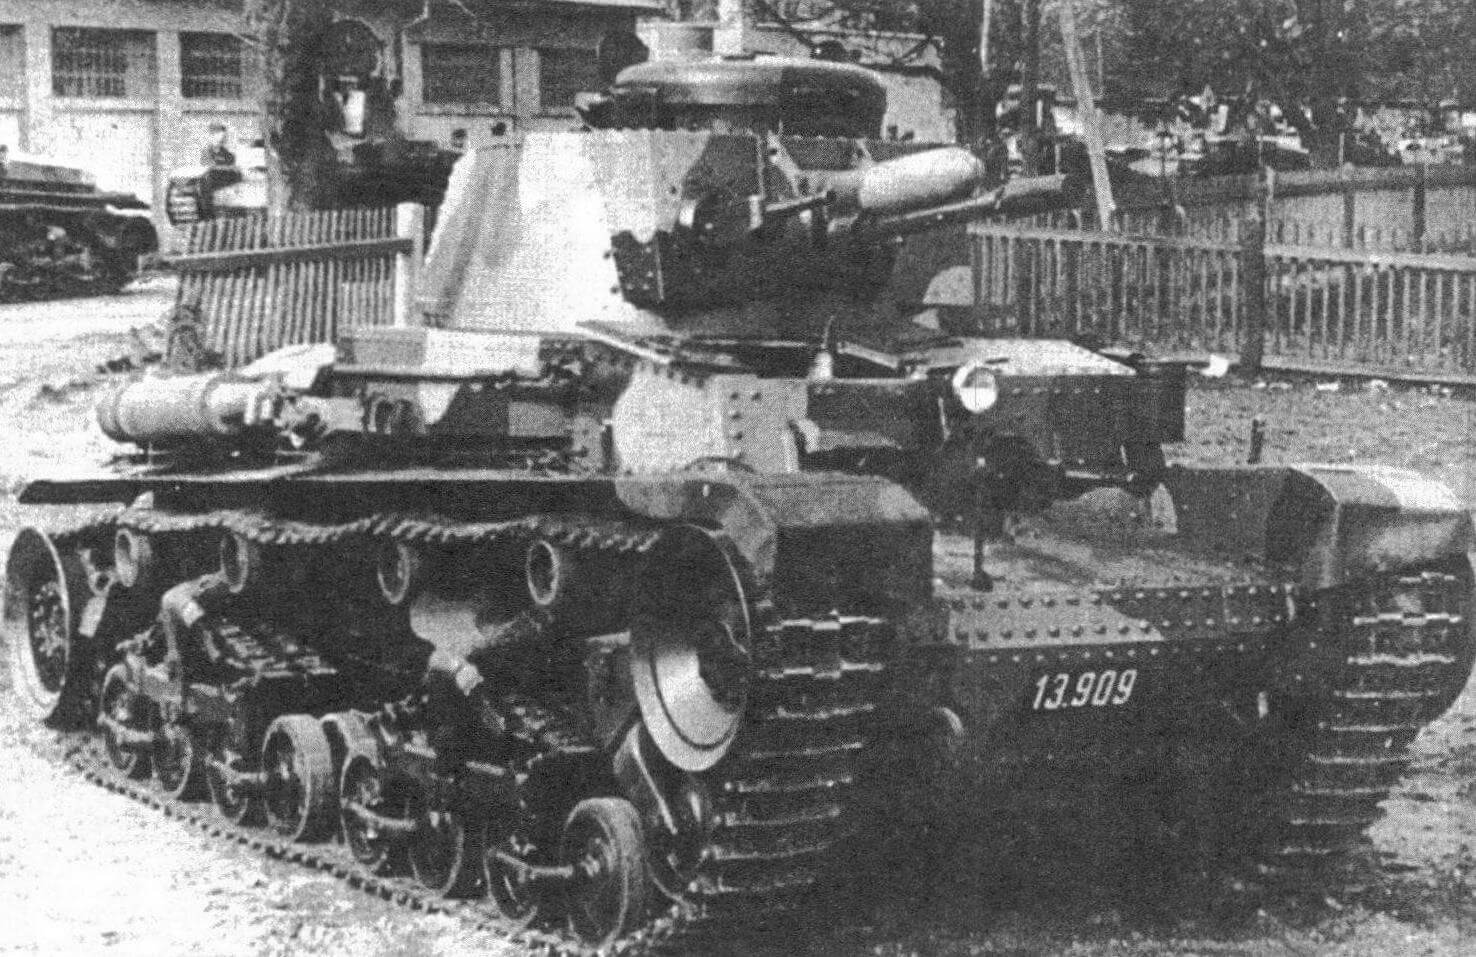 Танк LT vz.35 с серийным номером 13909 в 1-м танковом полку в Миловицах, весна 1938 года. Чехословацкая армия получила эту машину 11 марта 1938 года, а уничтожена она была в 1941 году, уже находясь на службе в Вермахте